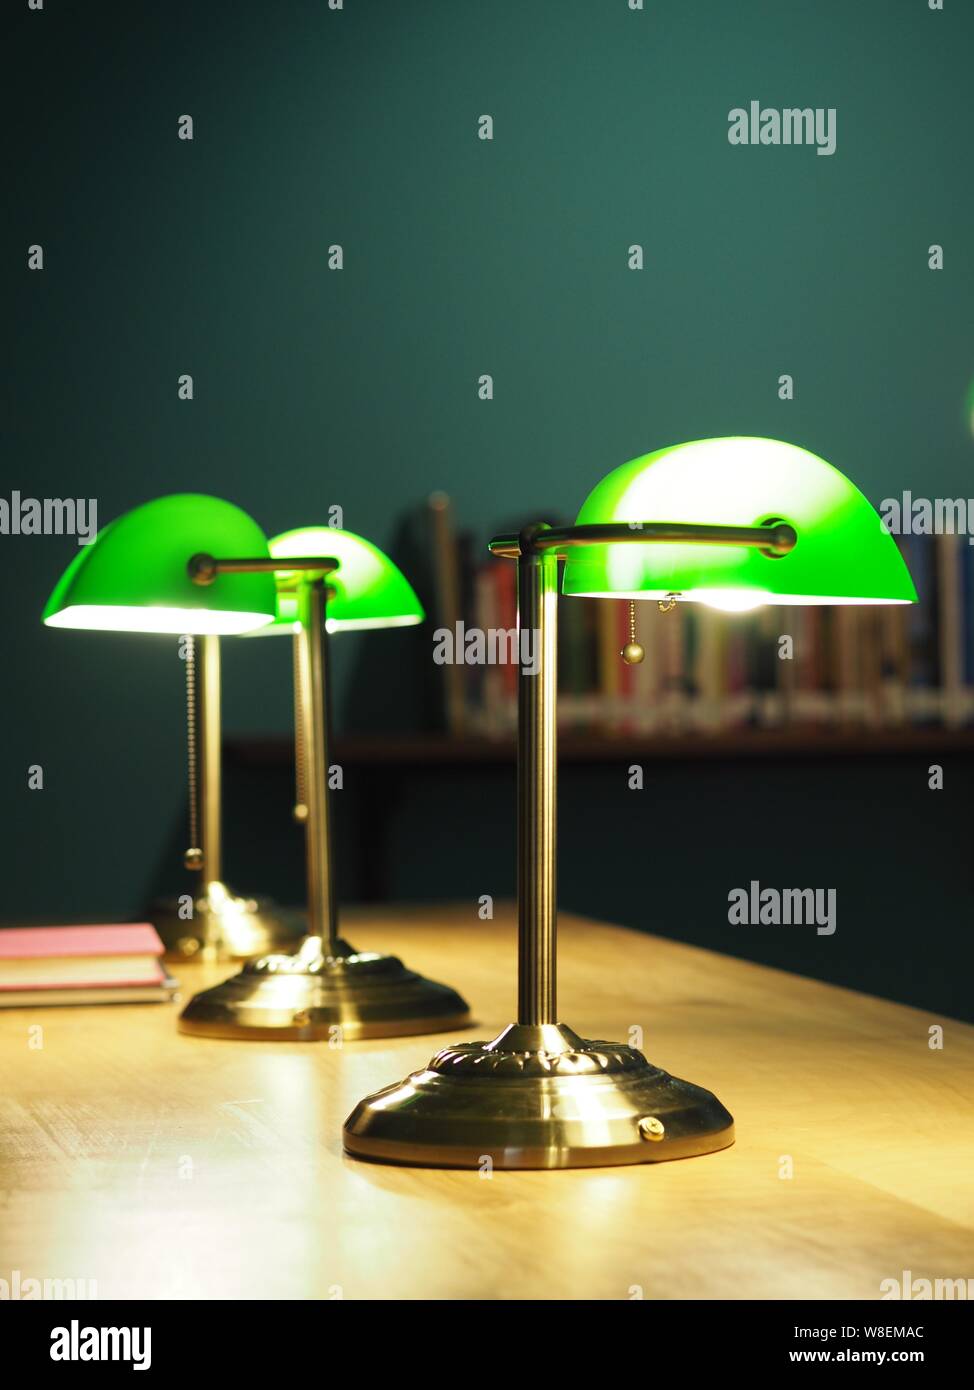 Grüne Lampe in einer Bibliothek Stockfotografie - Alamy